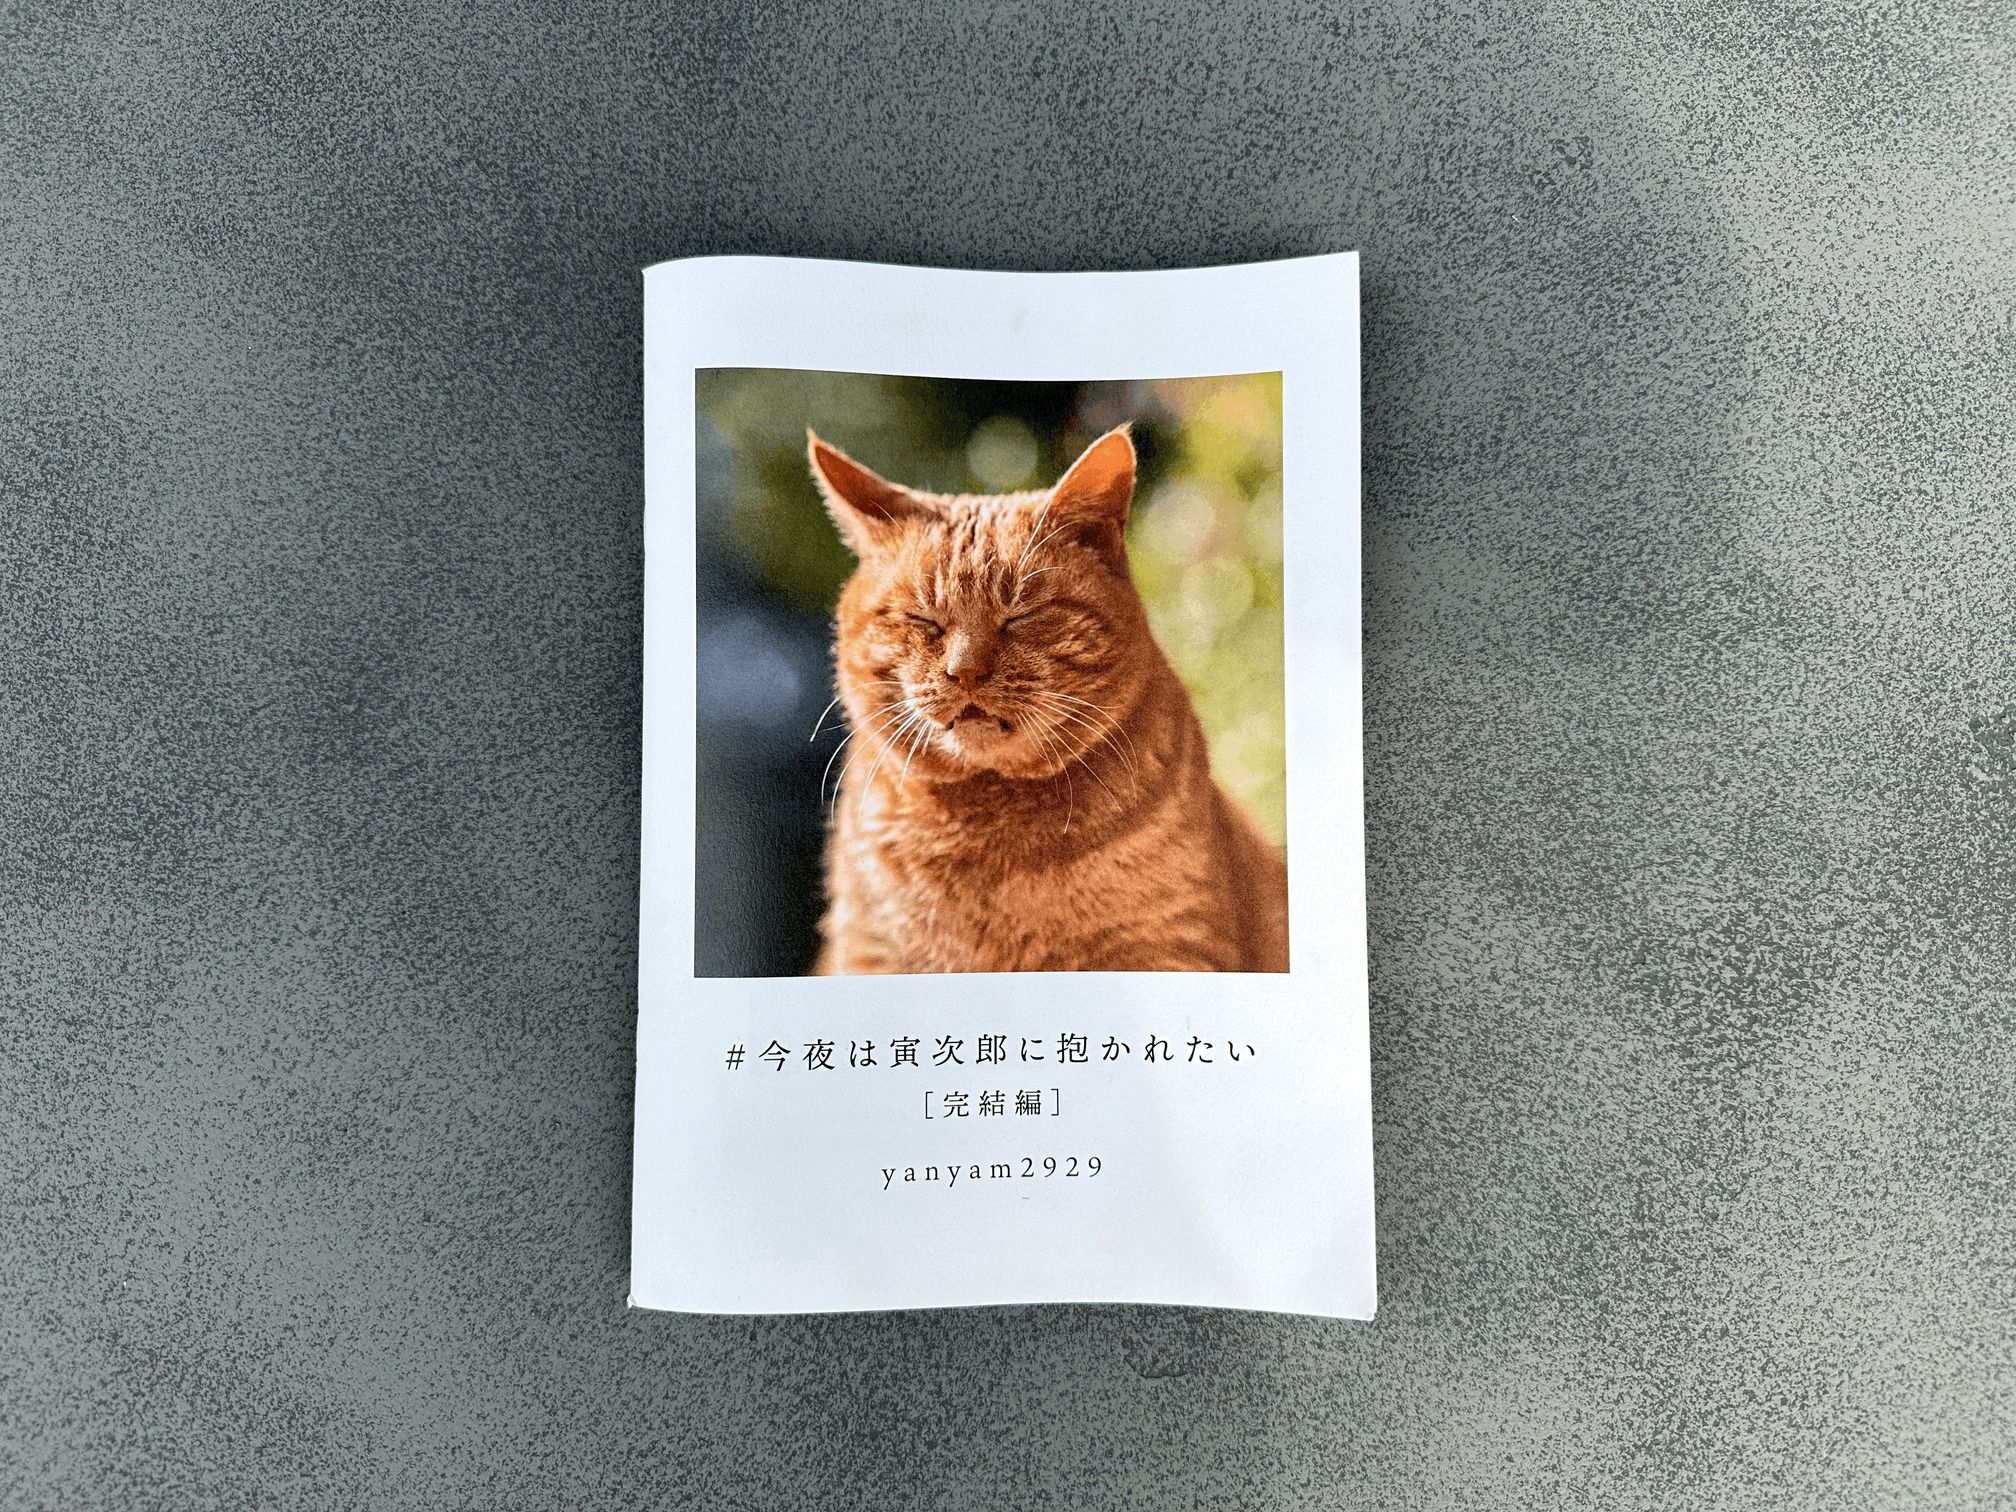 「猫に可愛さを求めない」野生味溢れる猫の魅力を“独特のアングル”で切り取る猫写真家に迫る